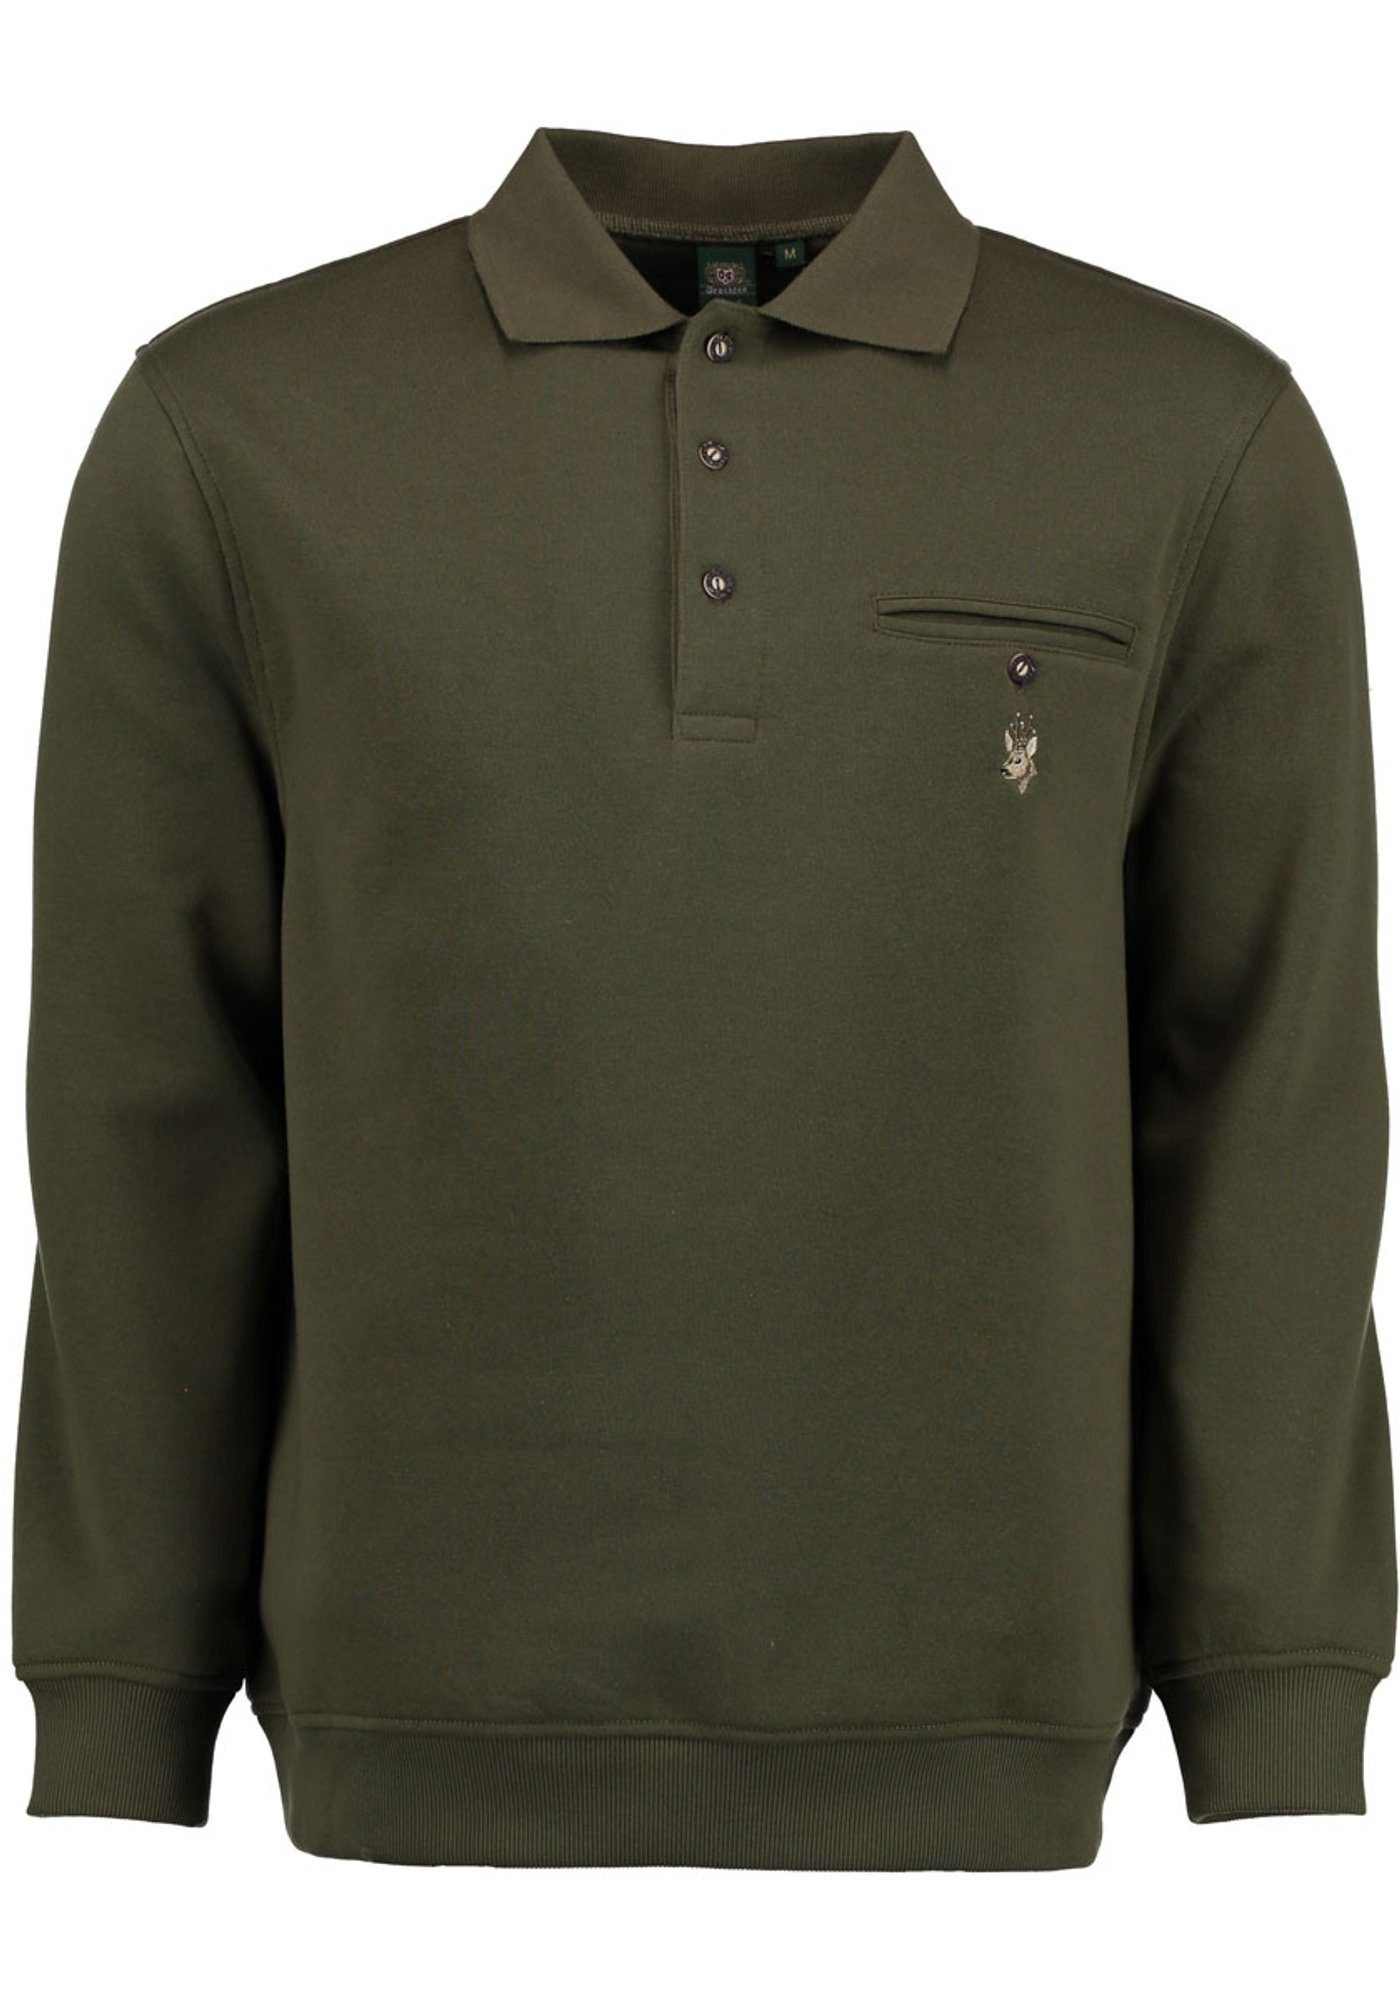 Sweatshirt Rizapa mit Jagdsweatshirt Rehkopf-Stickerei Brusttasche und auf Kragen OS-Trachten